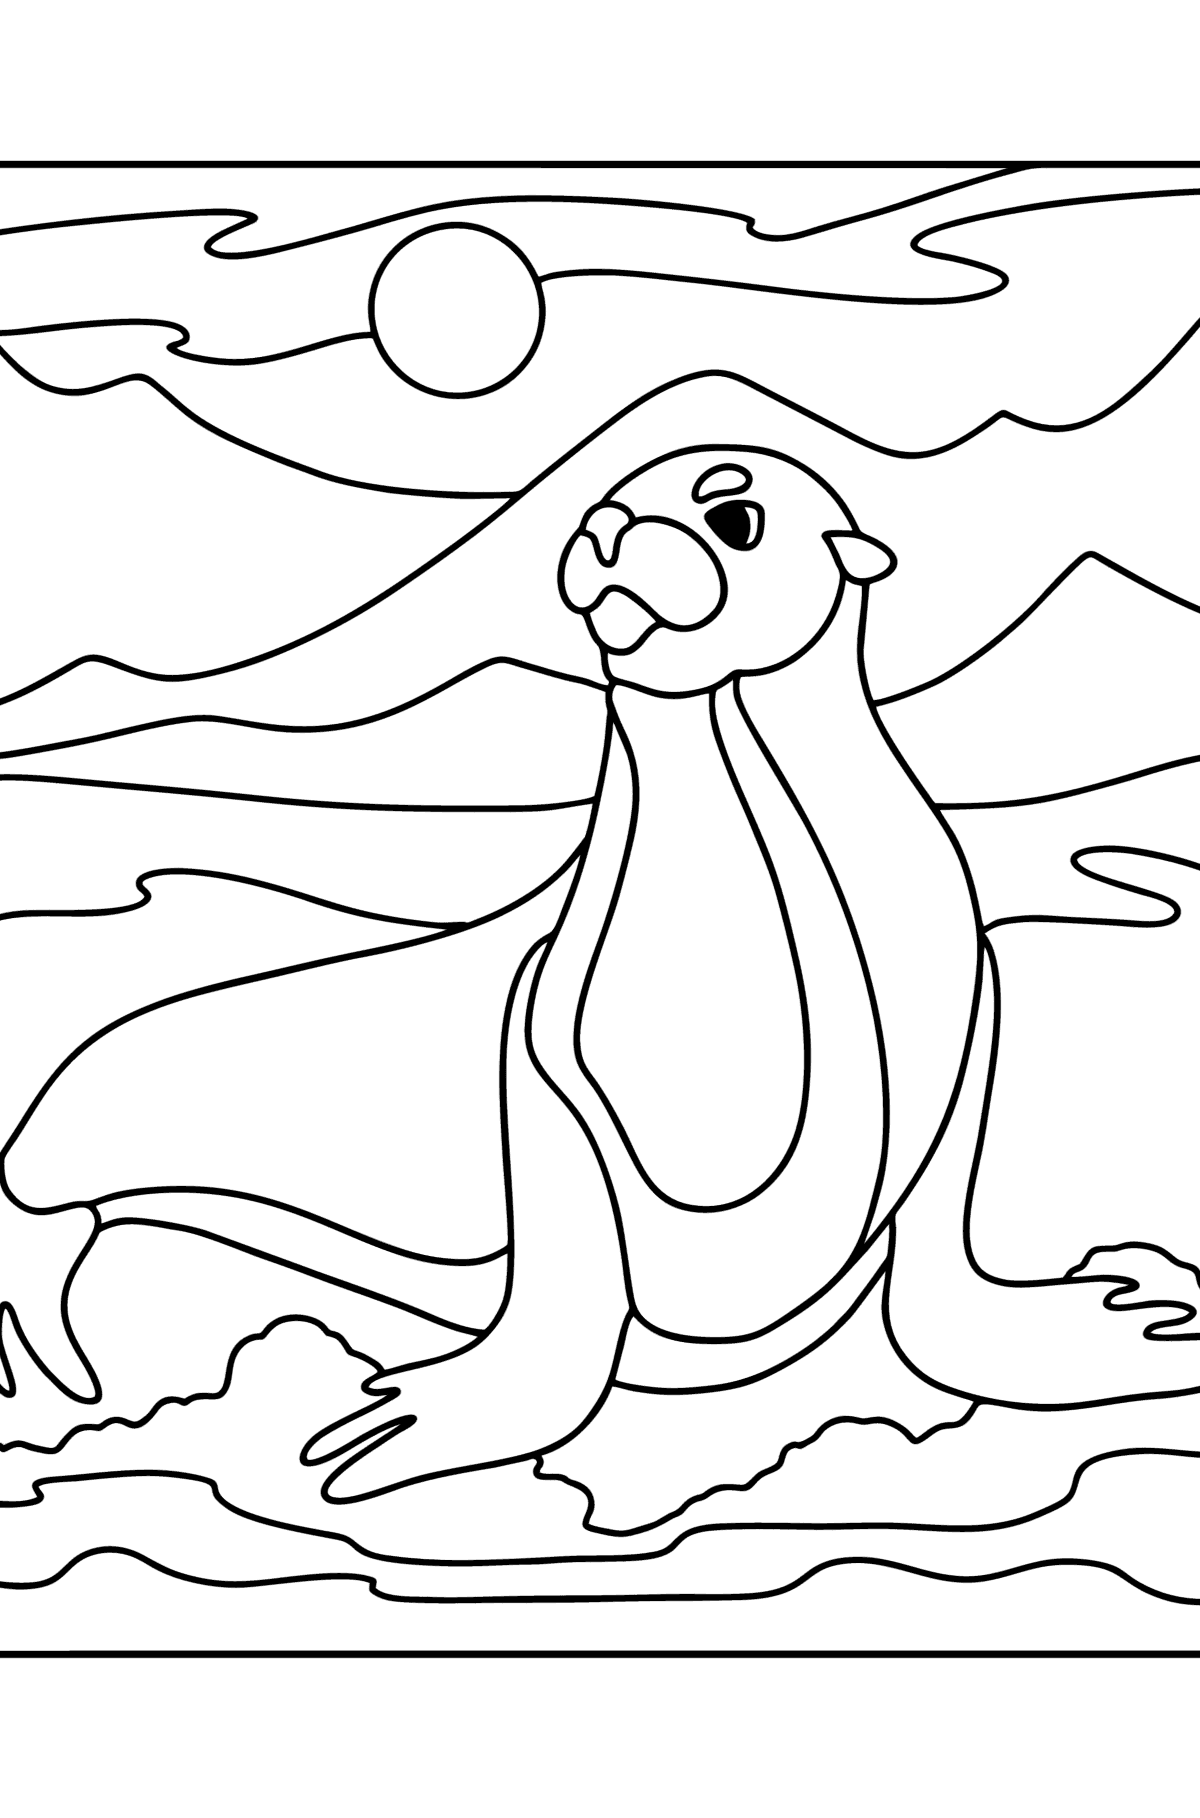 Dibujo de León marino para colorear - Dibujos para Colorear para Niños